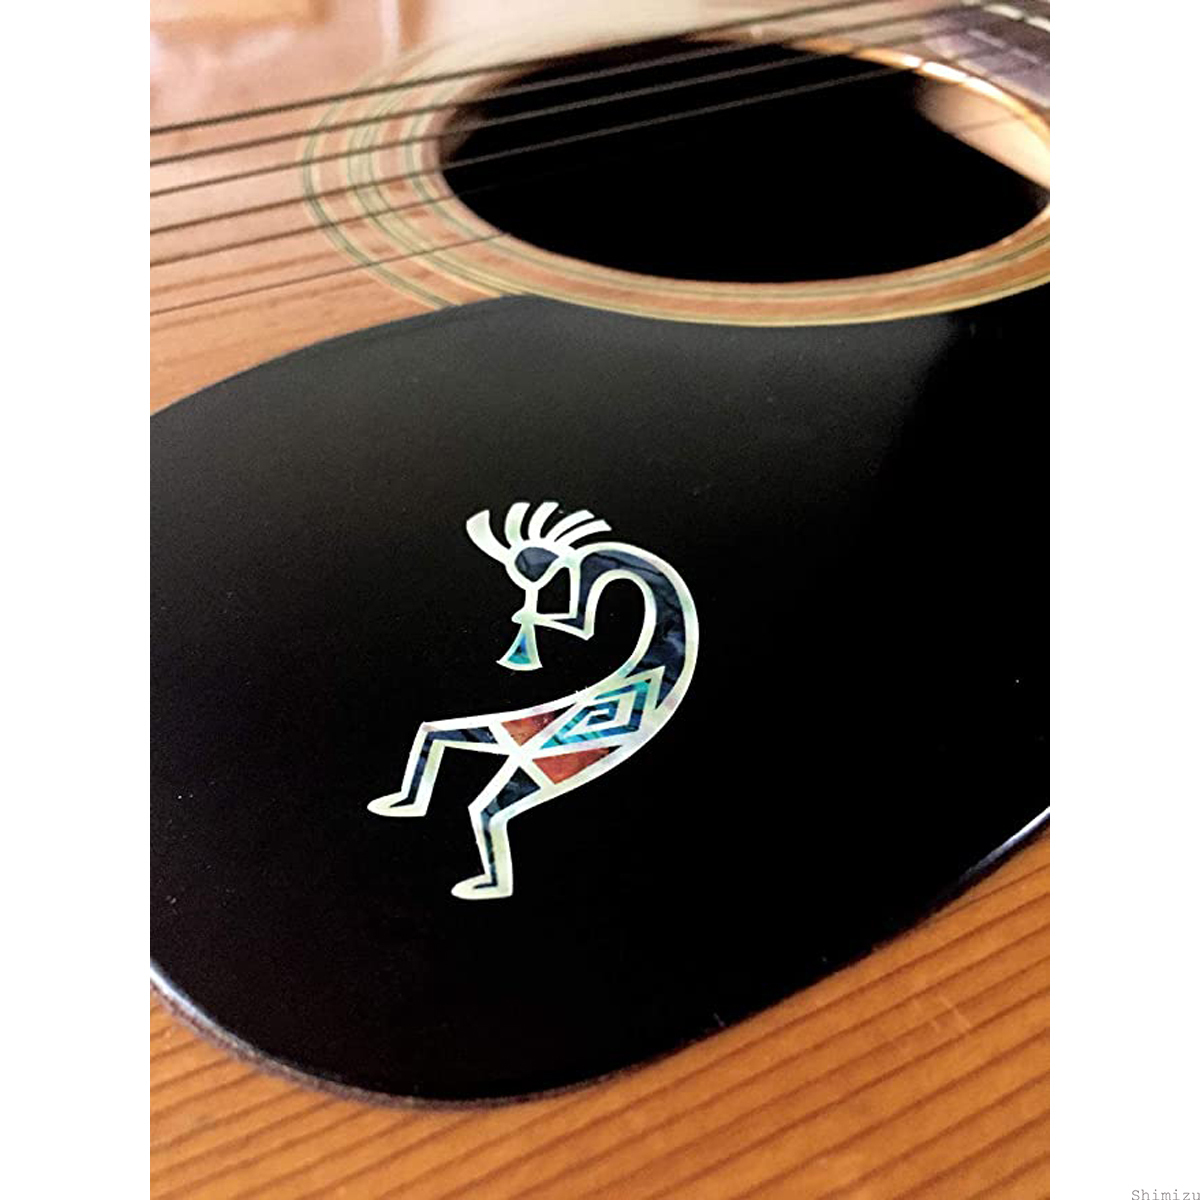 L&Rセット ウクレレ インレイシール インレイステッカー ギター アコギ エレアコ フォークギター かわいい 人気 贈り物 送料無料_画像3